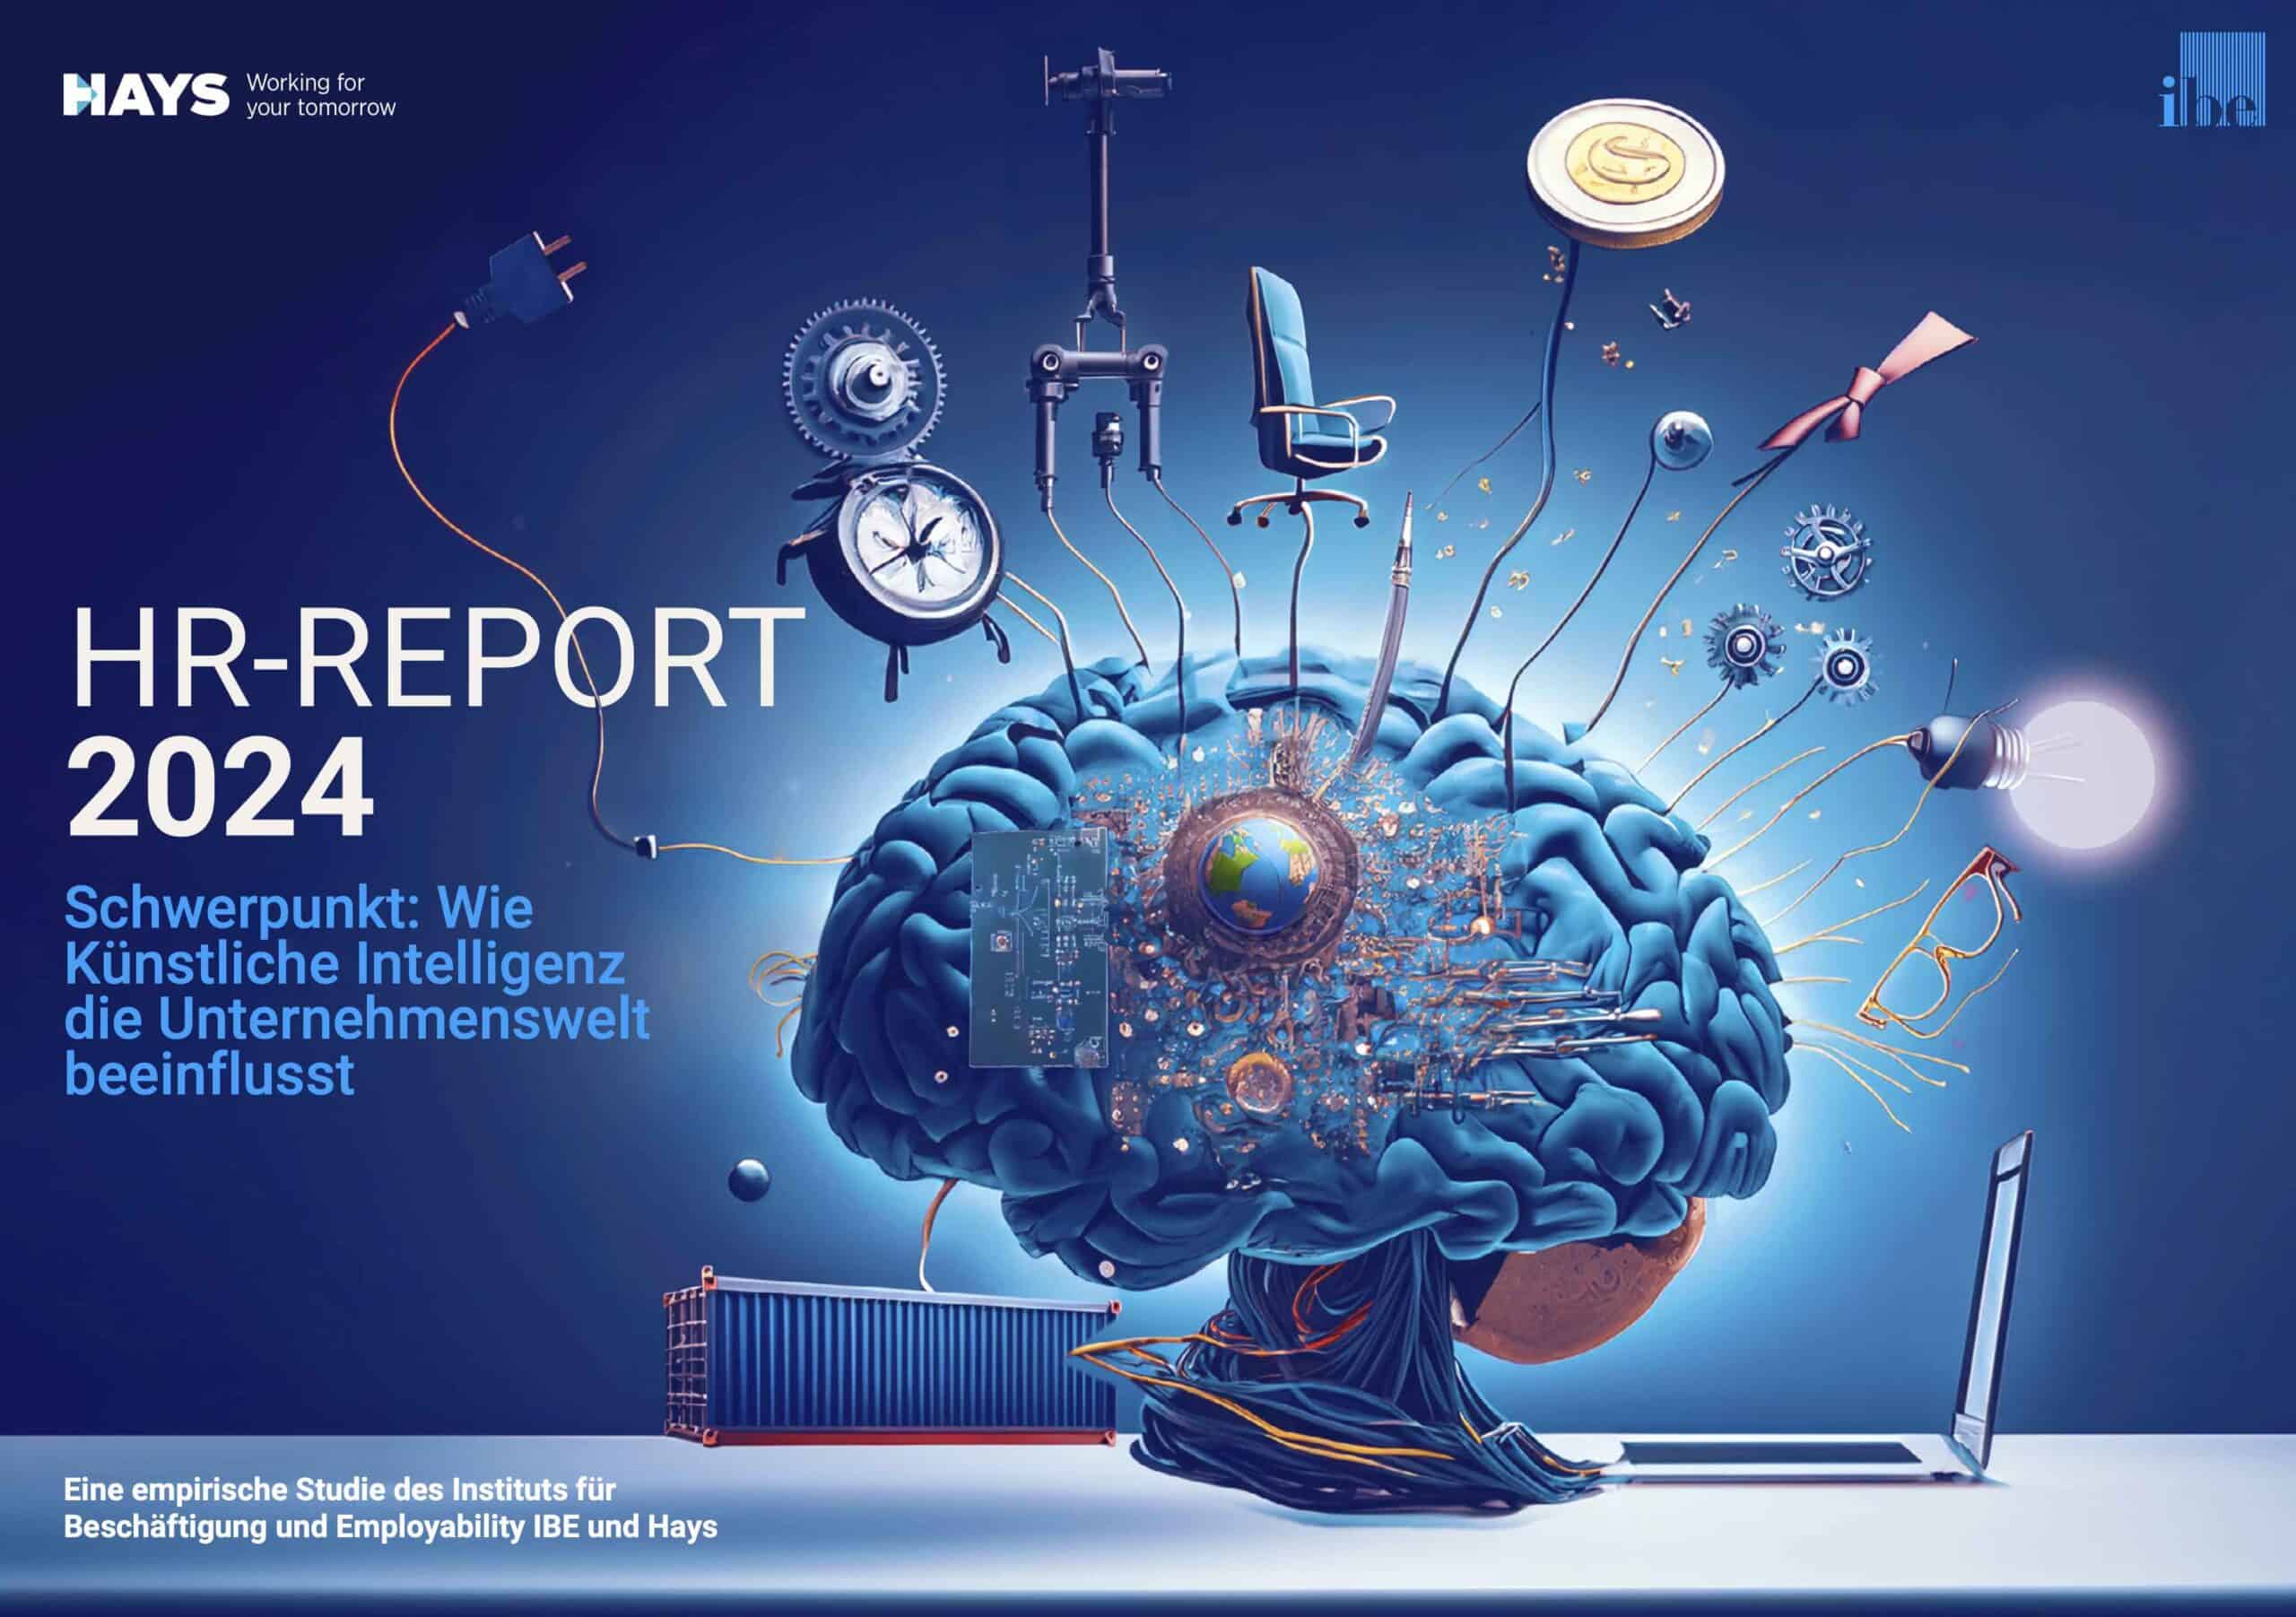 Hays HR Report 2024 Künstliche Intelligenz